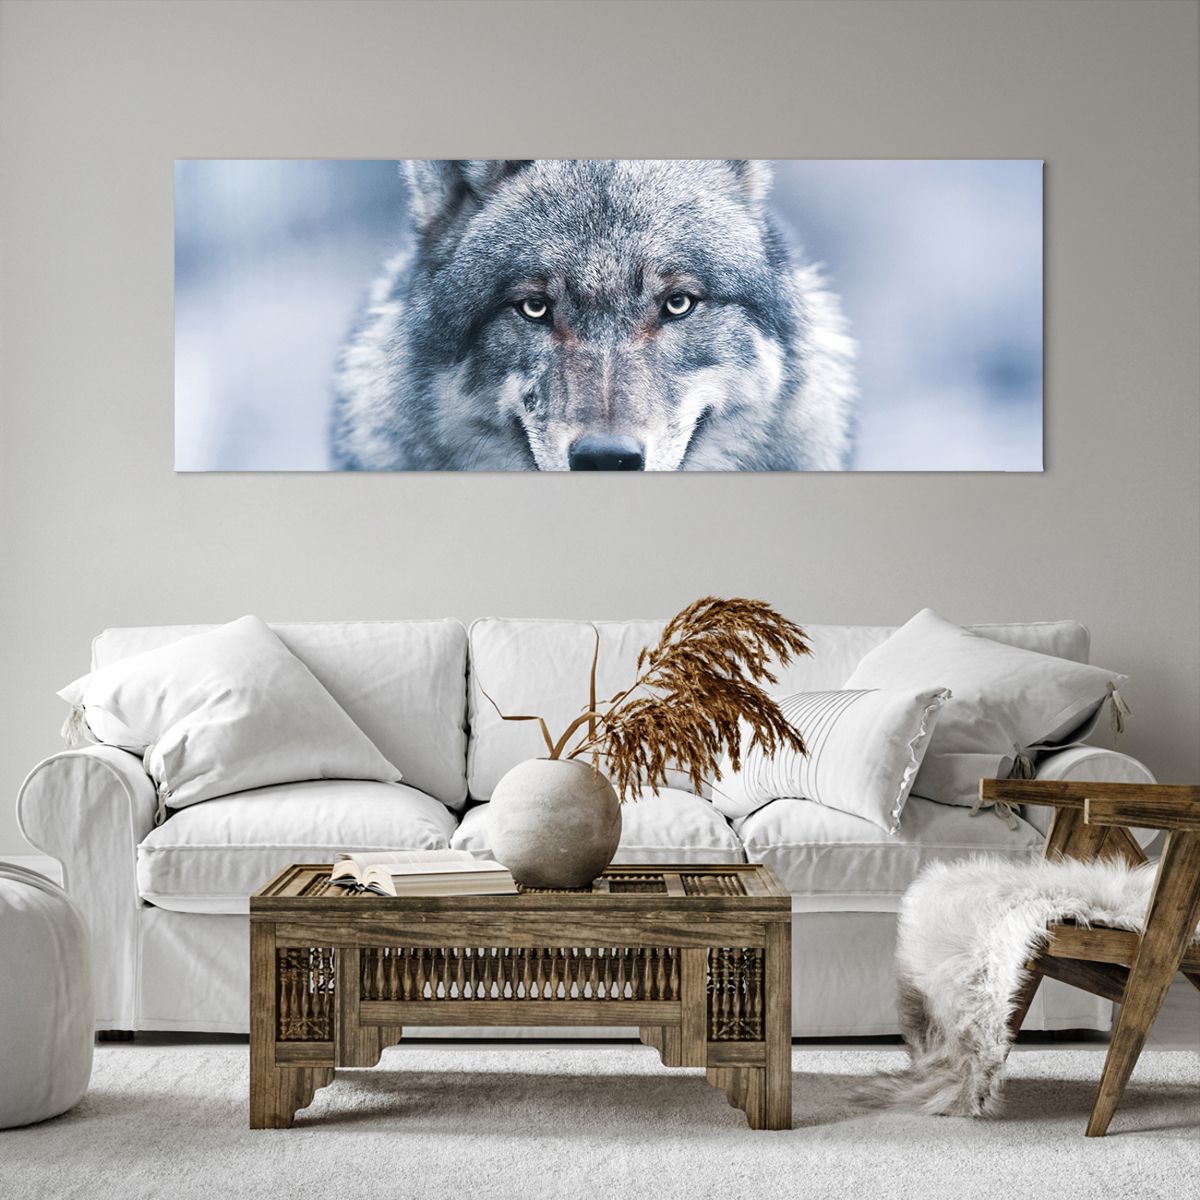 Bild auf Leinwand Wolf, Bild auf Leinwand Raubtier, Bild auf Leinwand Tiere, Bild auf Leinwand Natur, Bild auf Leinwand Natur